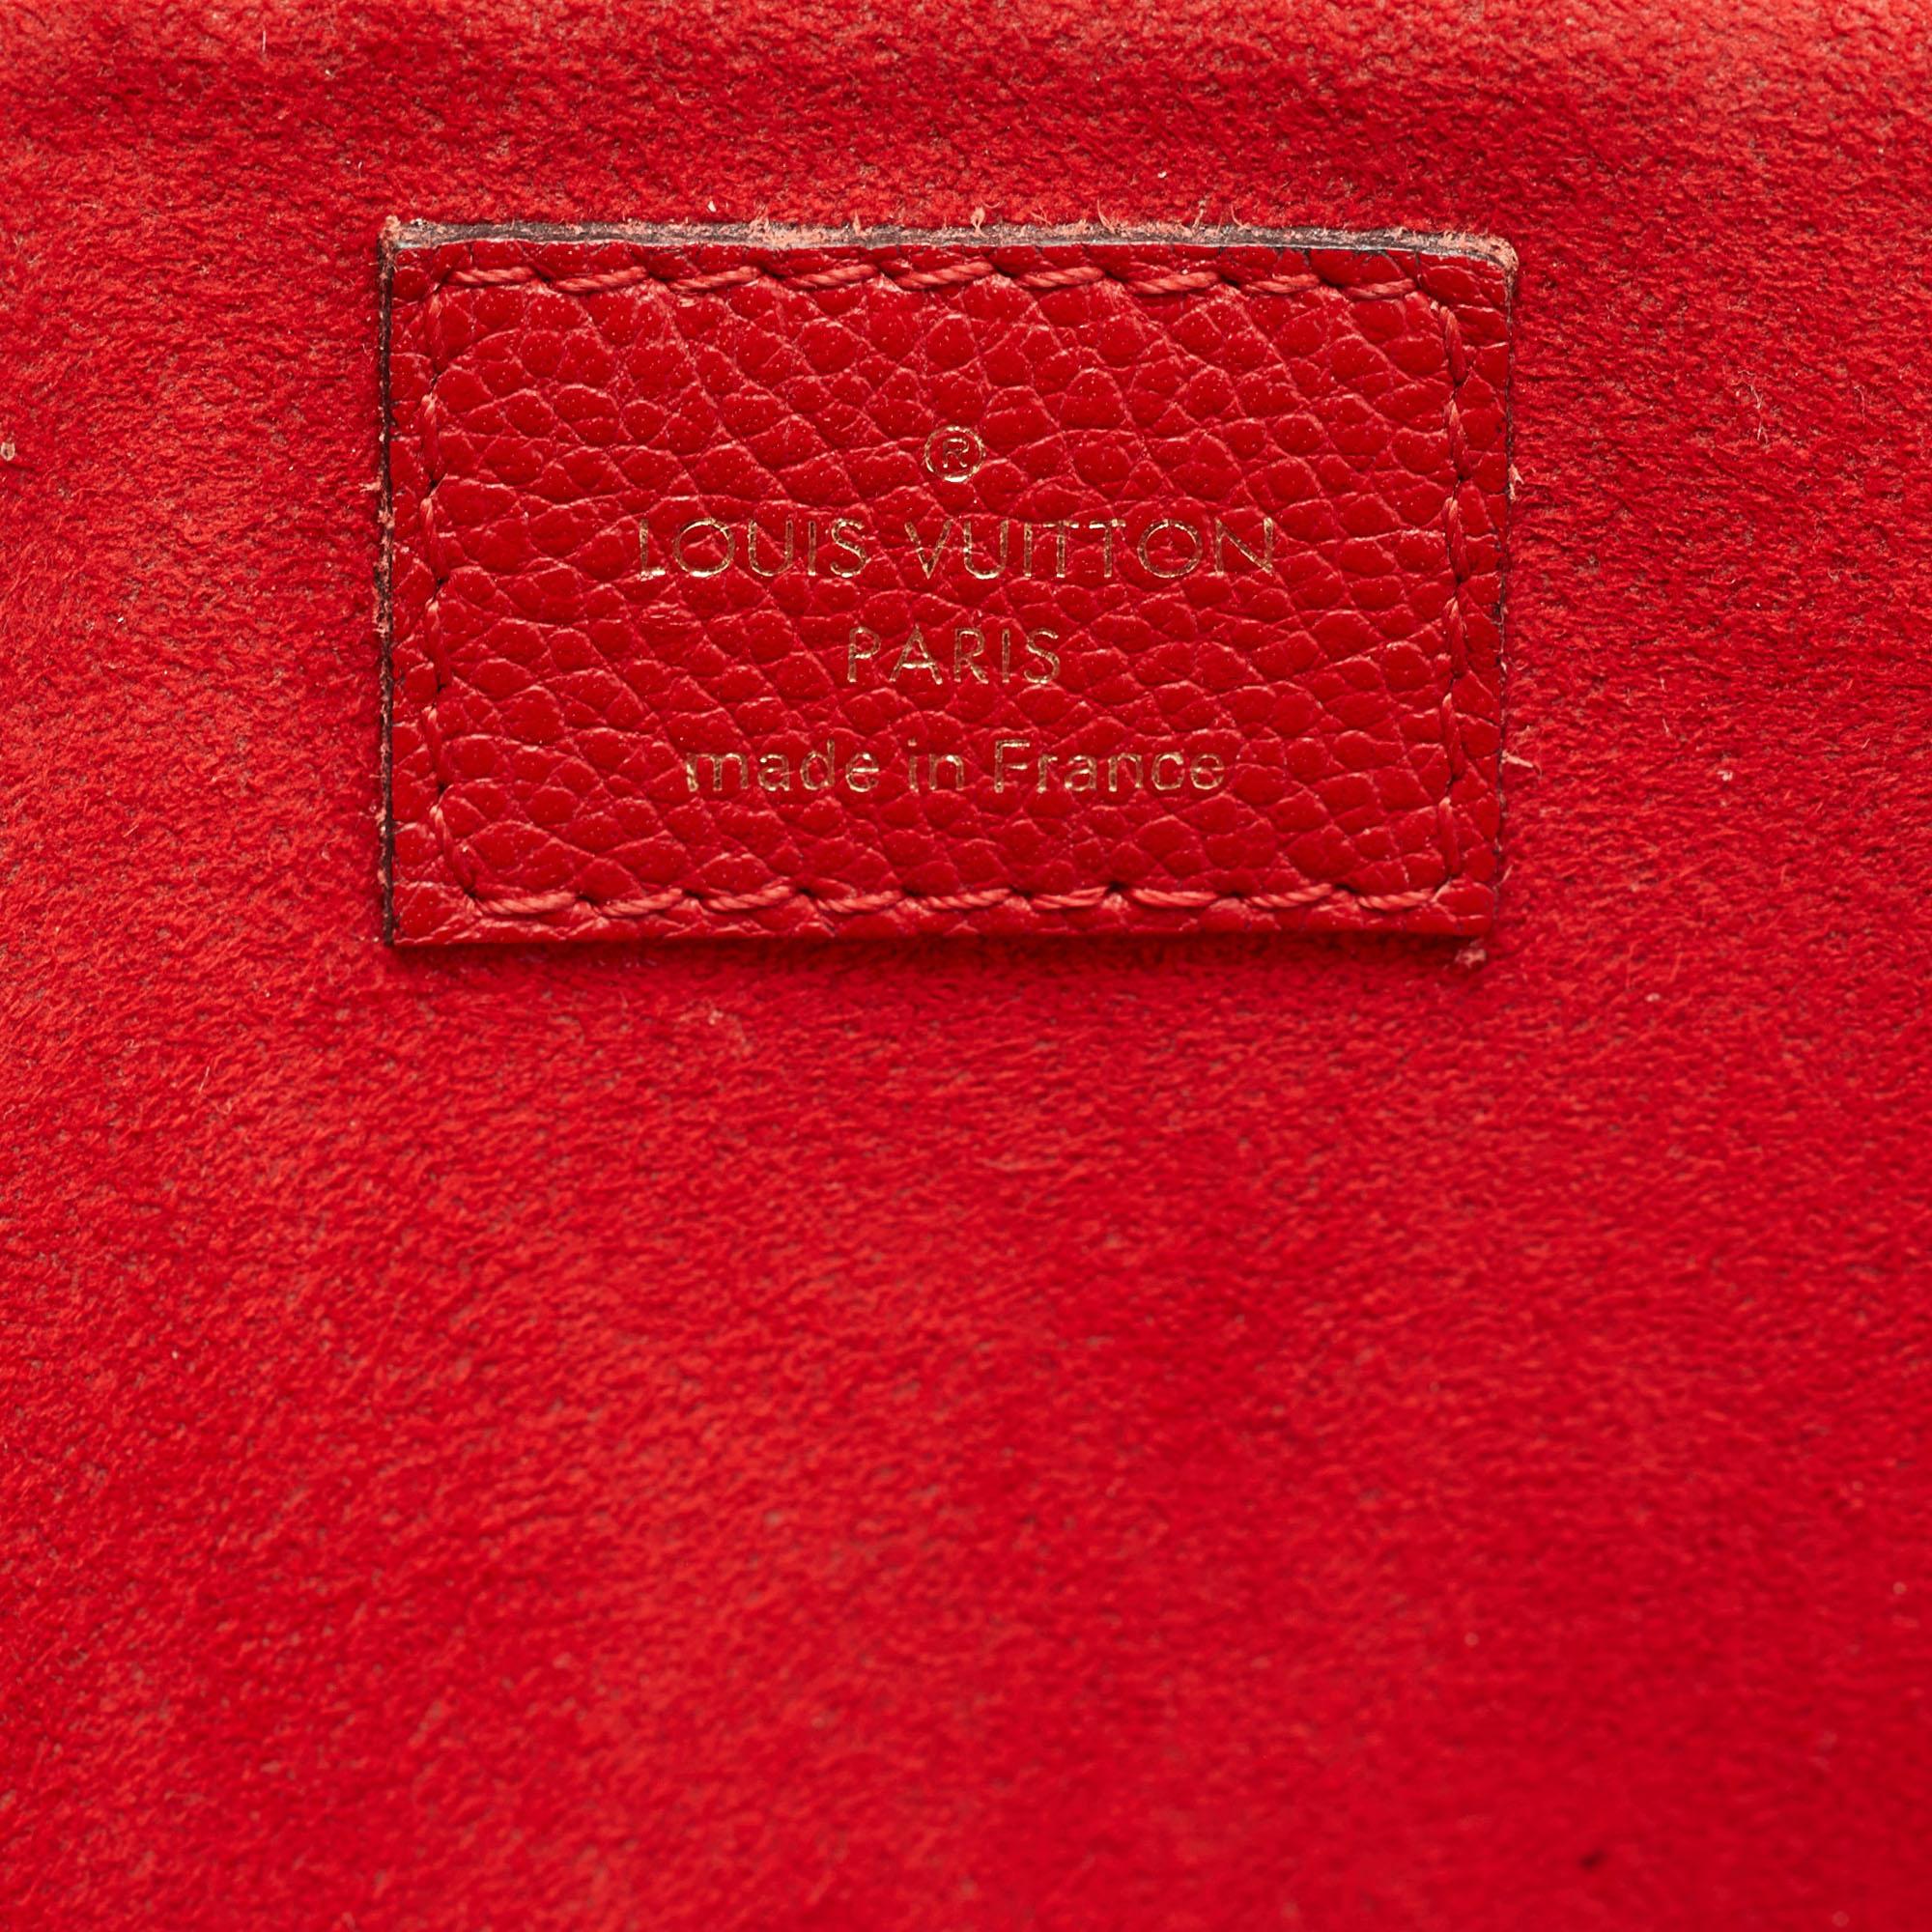 Louis Vuitton Cherry Monogram Canvas Alma B'N'B Bag 4